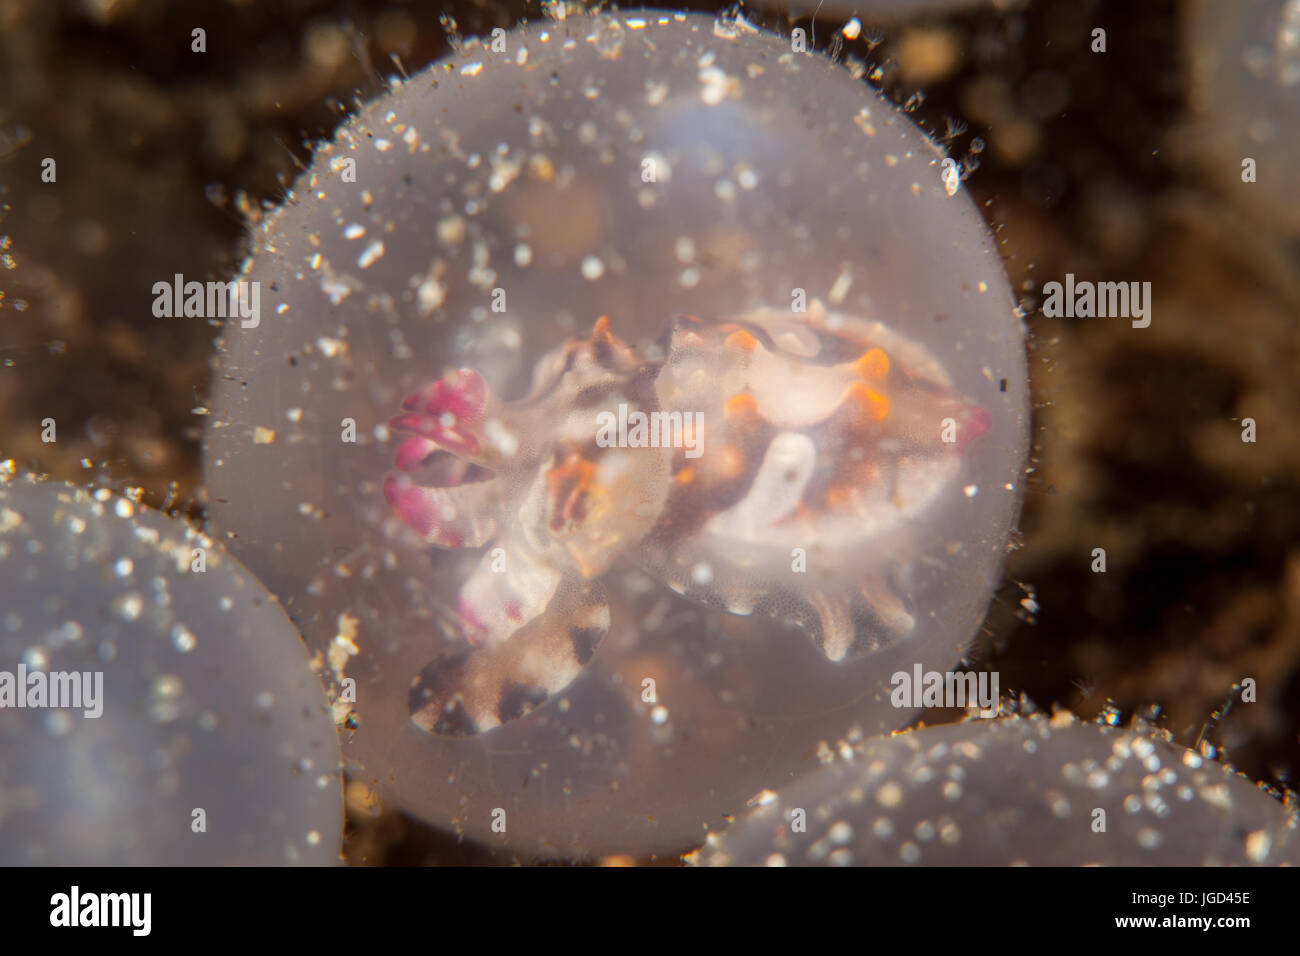 Une seiche flamboyante attend l'embryon d'éclore dans le Détroit de Lembeh (Indonésie). Cette zone est connue pour son extraordinaire biodiversité marine. Banque D'Images